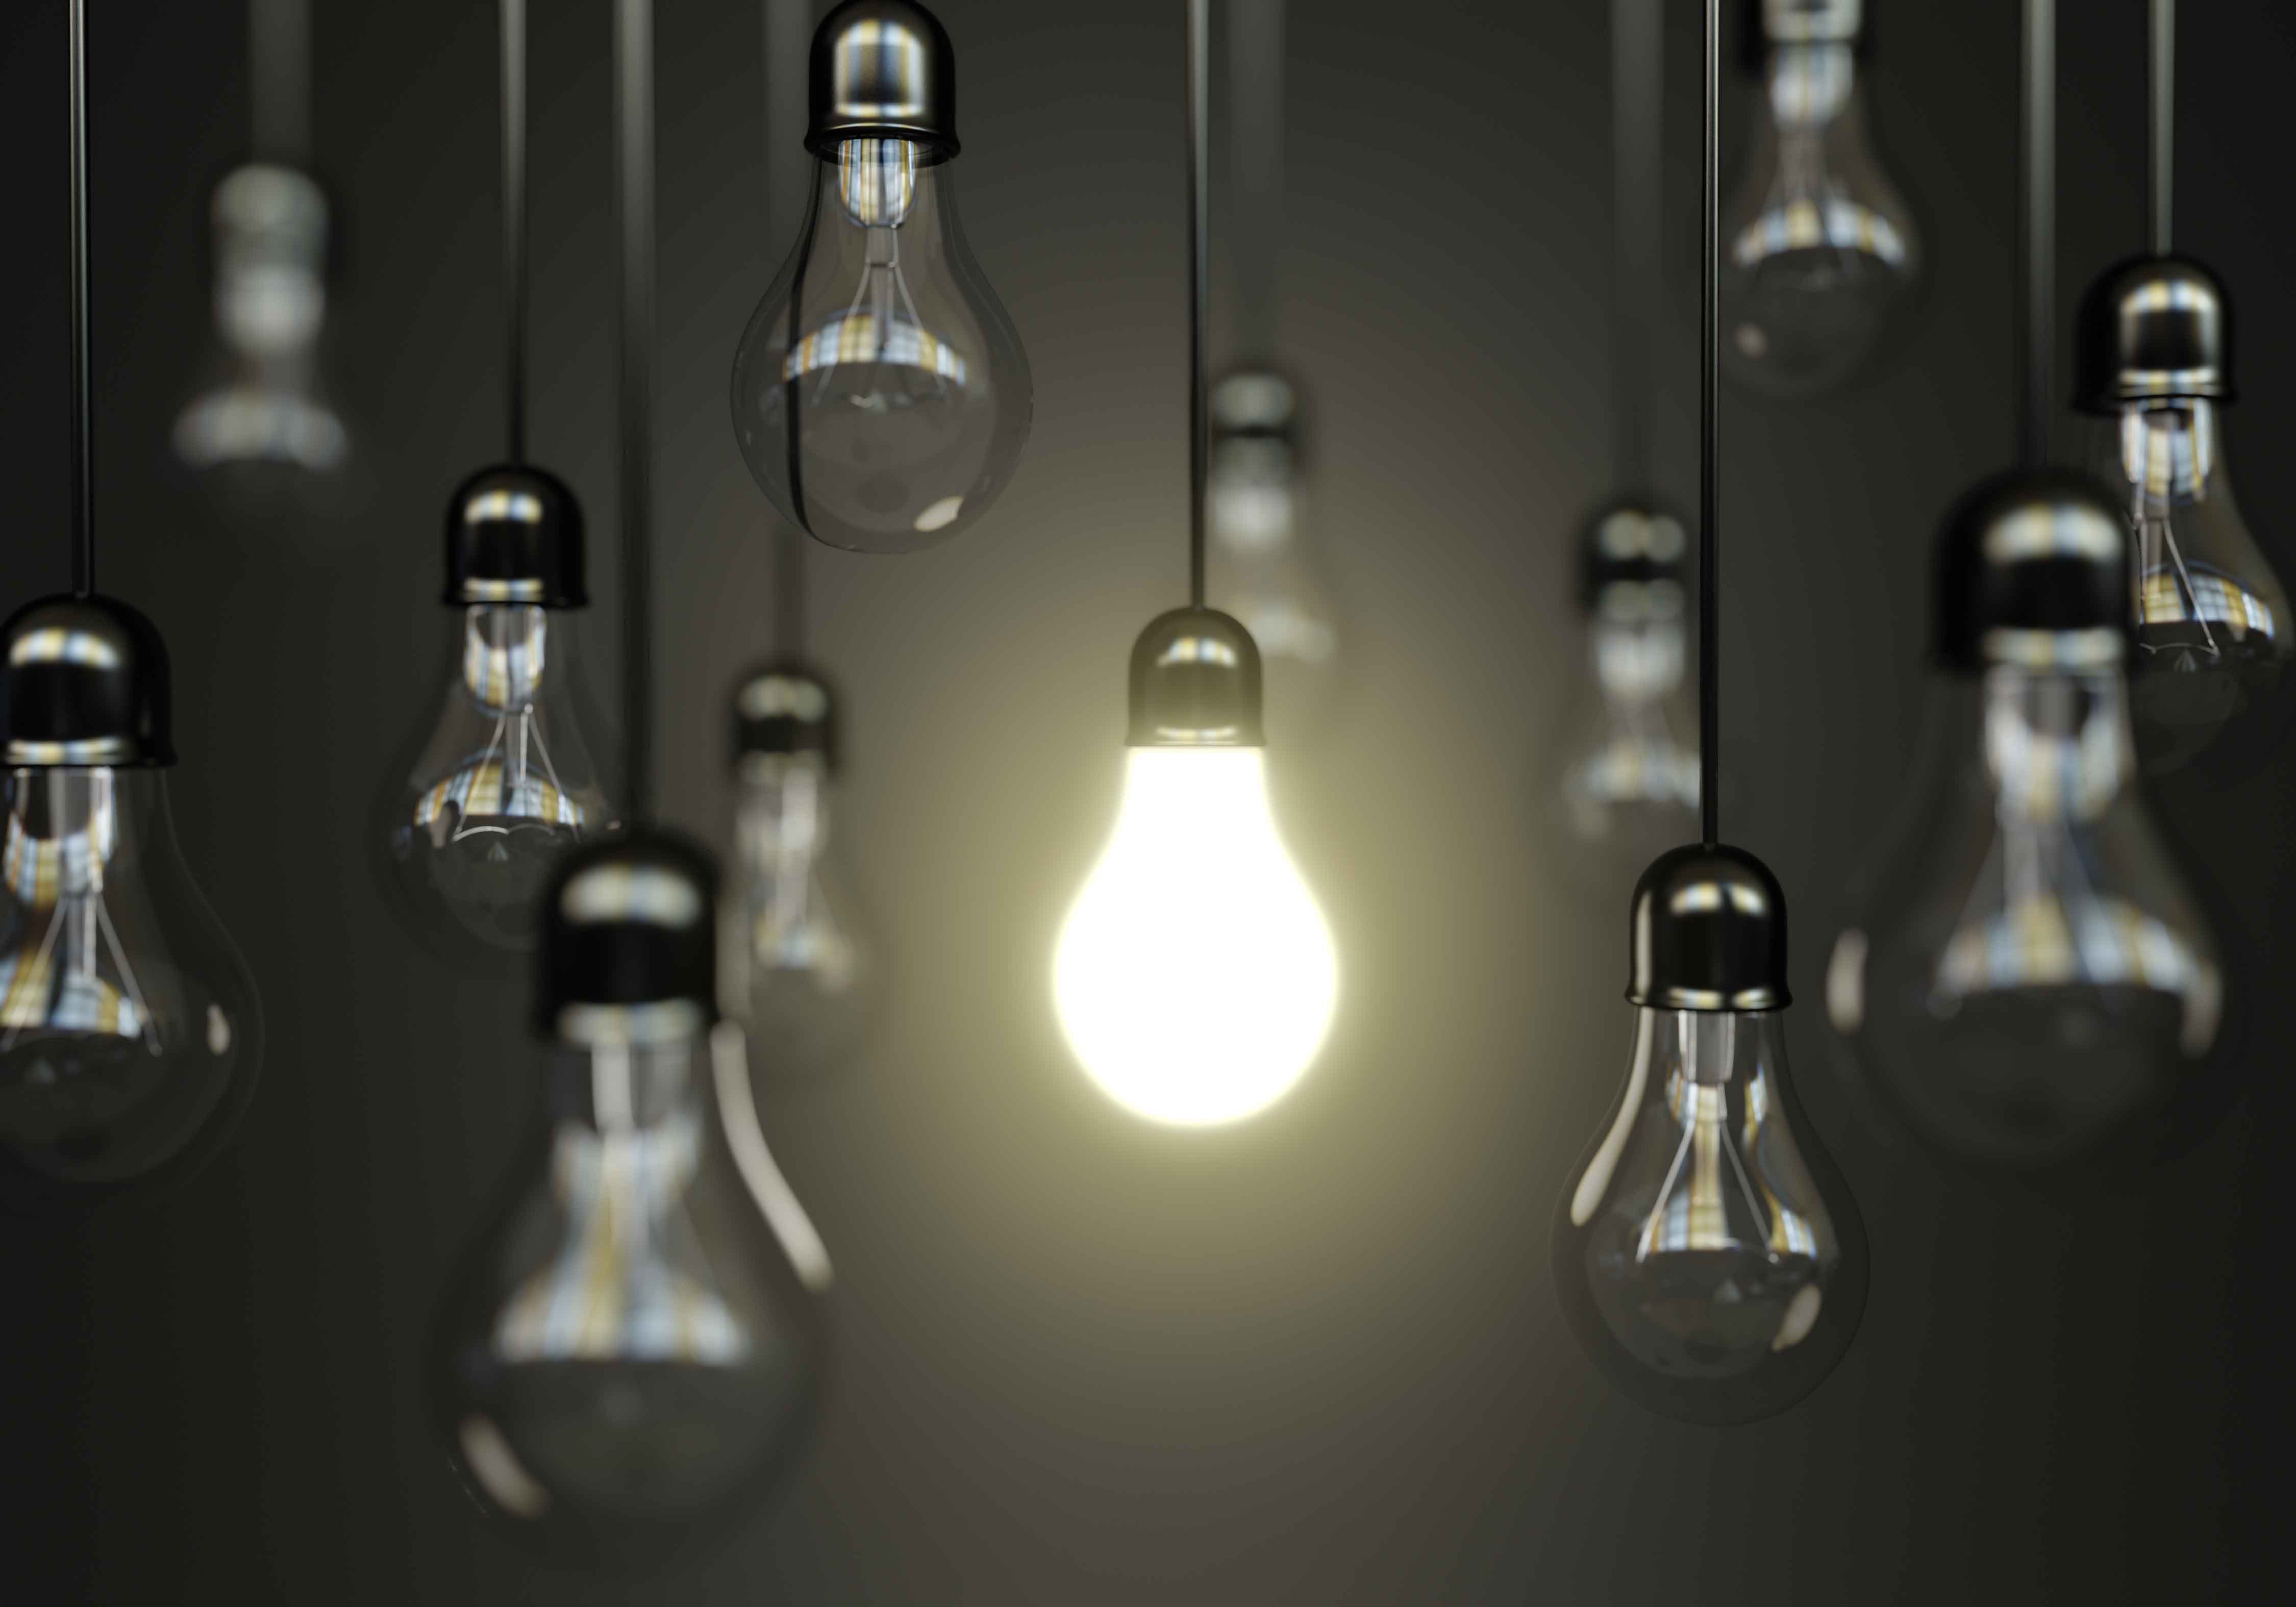 LED Bulbs - make your home green